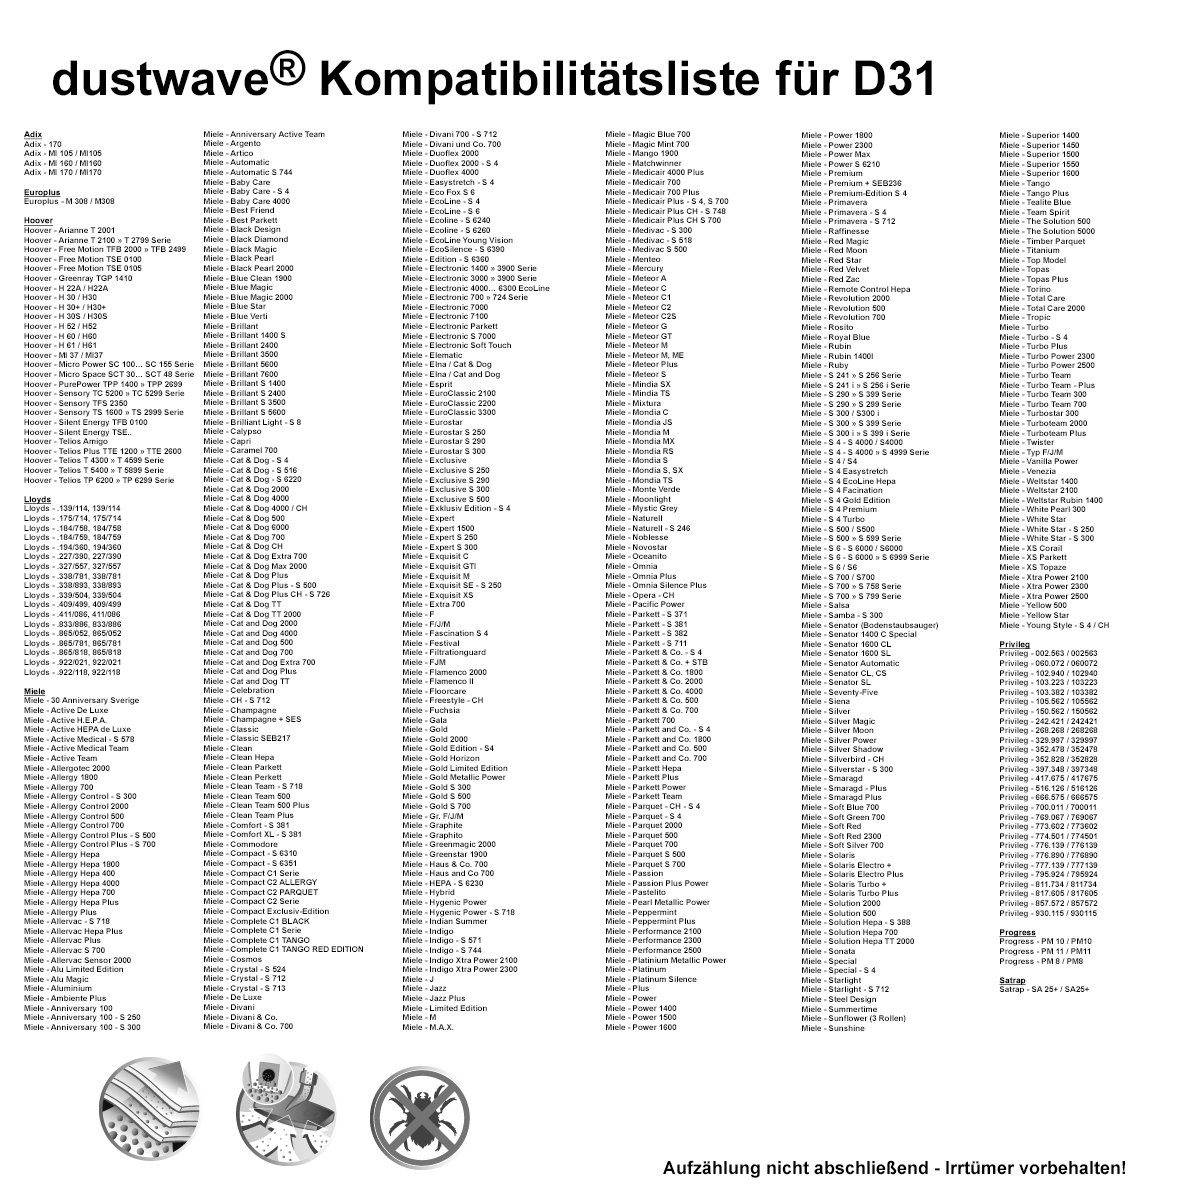 Staubsaugerbeutel - zuschneidbar) 1 + für Test-Set, 1 15x15cm 1 Dustwave Staubsaugerbeutel Test-Set, Baur (ca. Hepa-Filter passend 340-994, 340.994 St., /